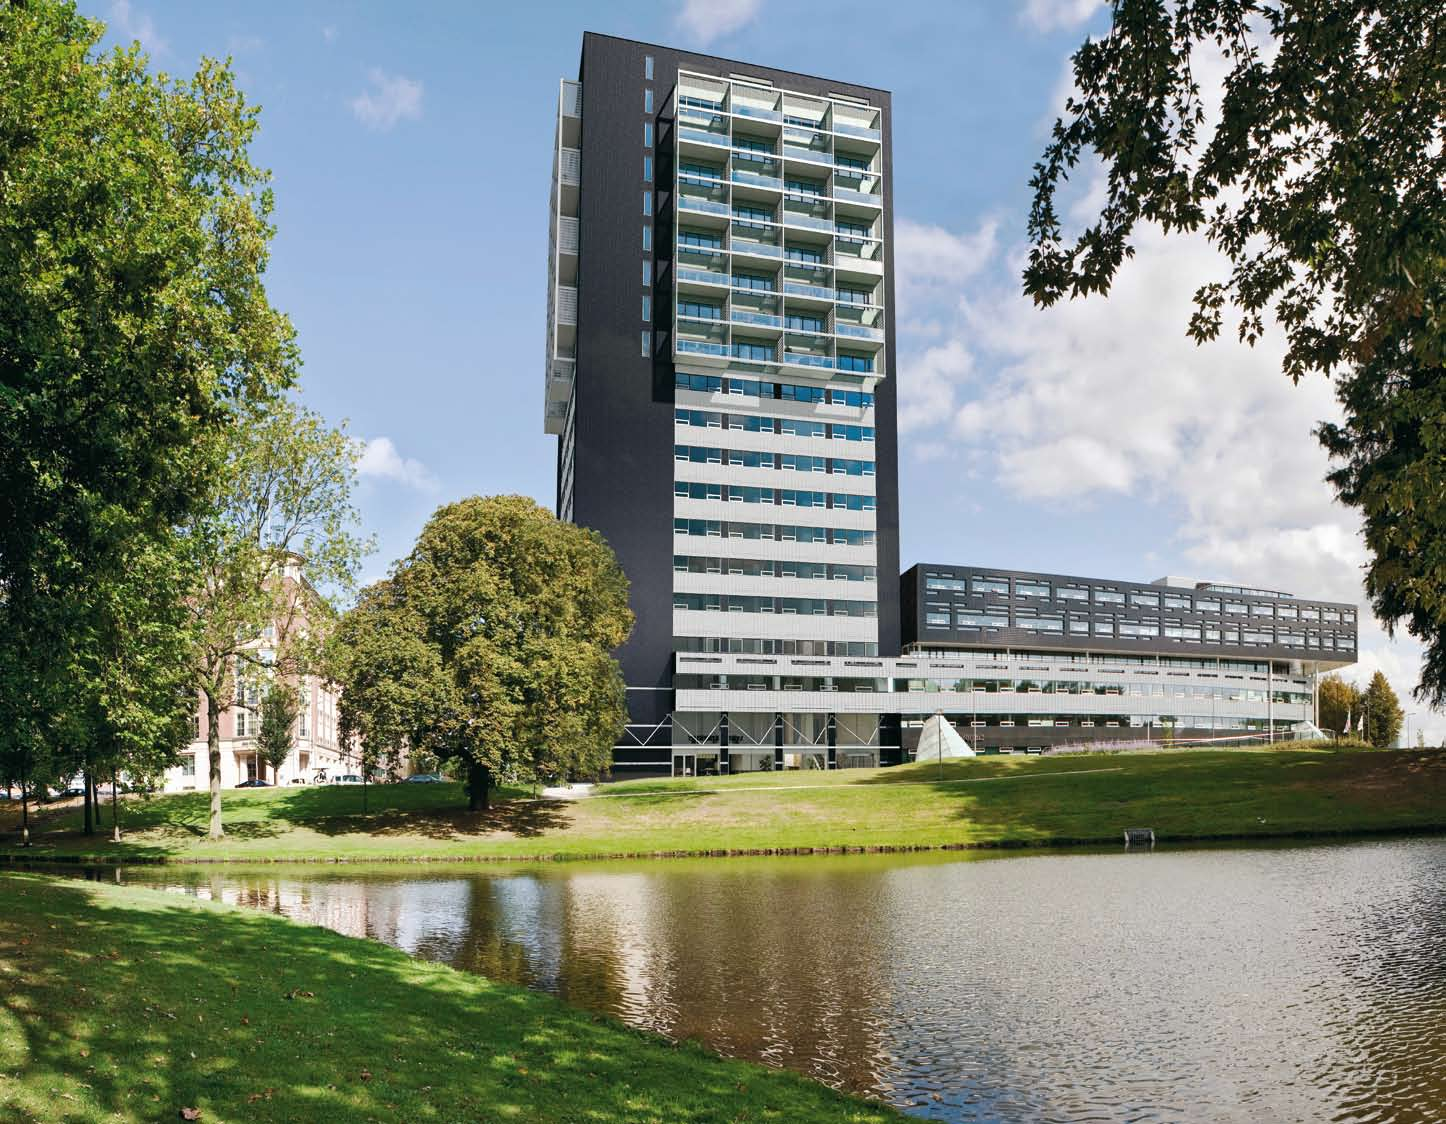 De stad, de Maas en Het Park. een locatie met overdonderende schoonheid Wonen tussen kunst en cultuur met o.a. Wereldmuseum, Boymans van Beuningen en de Kunsthal op loopafstand.